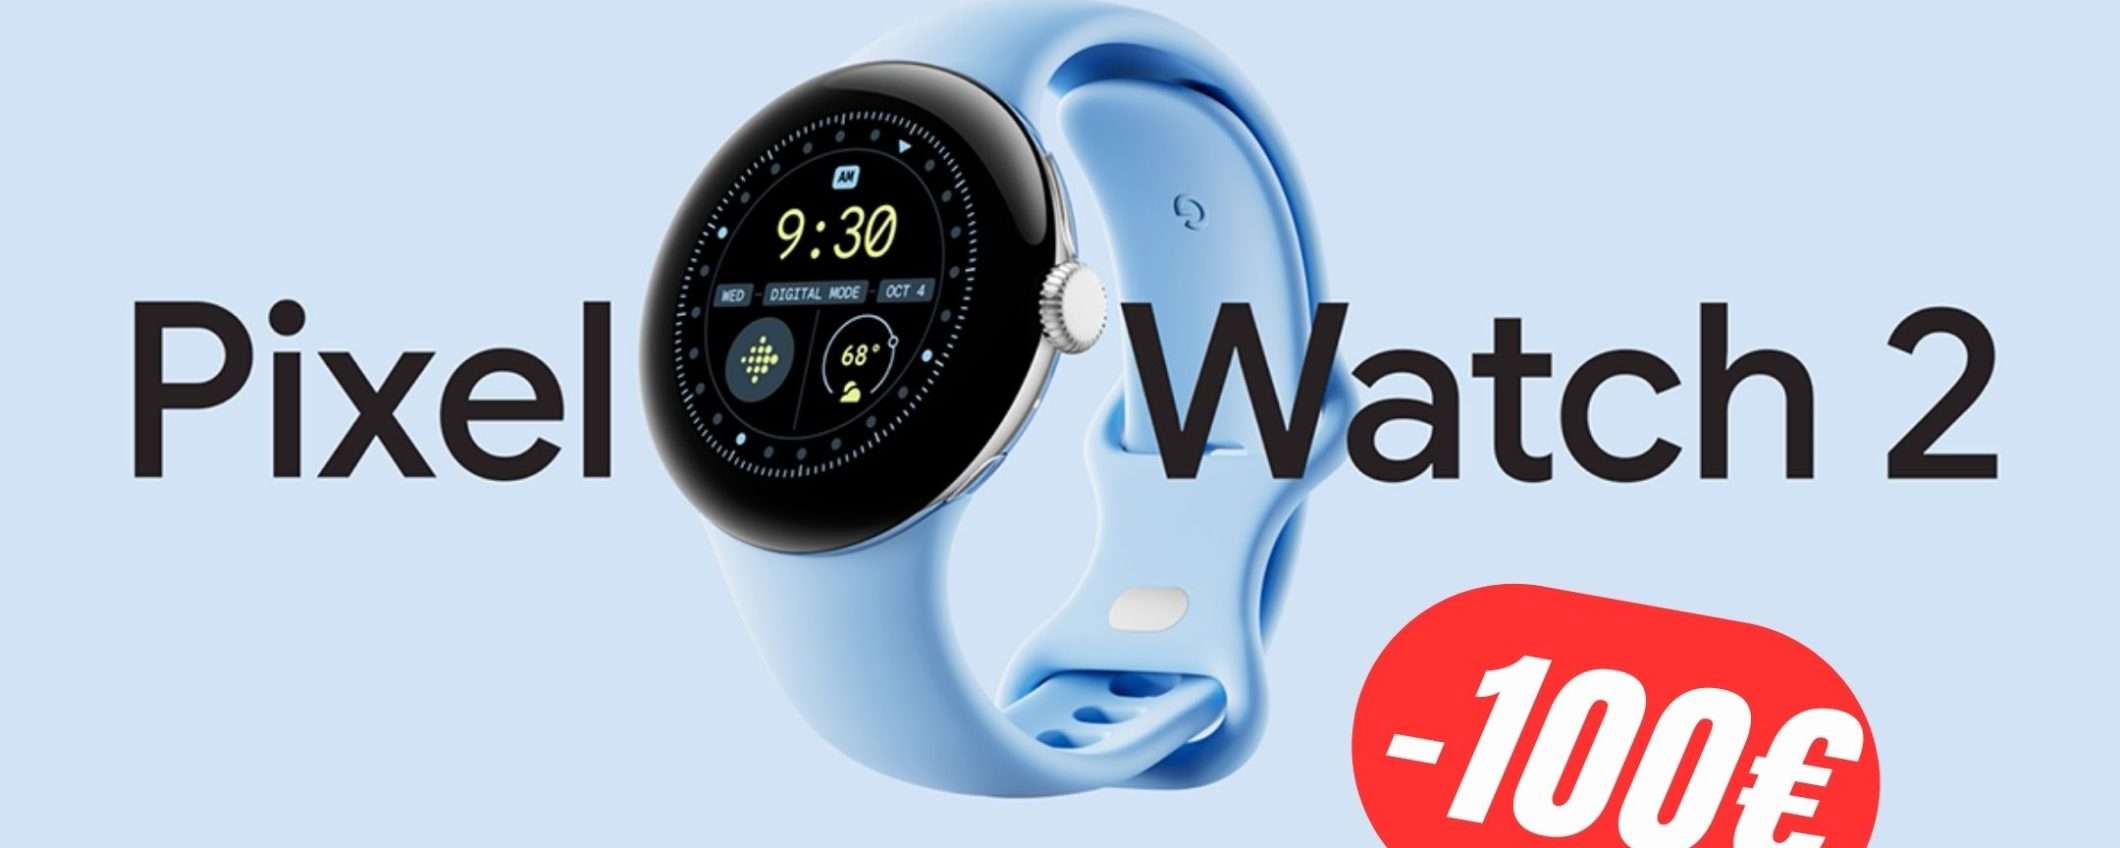 Google Pixel Watch 2 a 100€ in MENO su Amazon